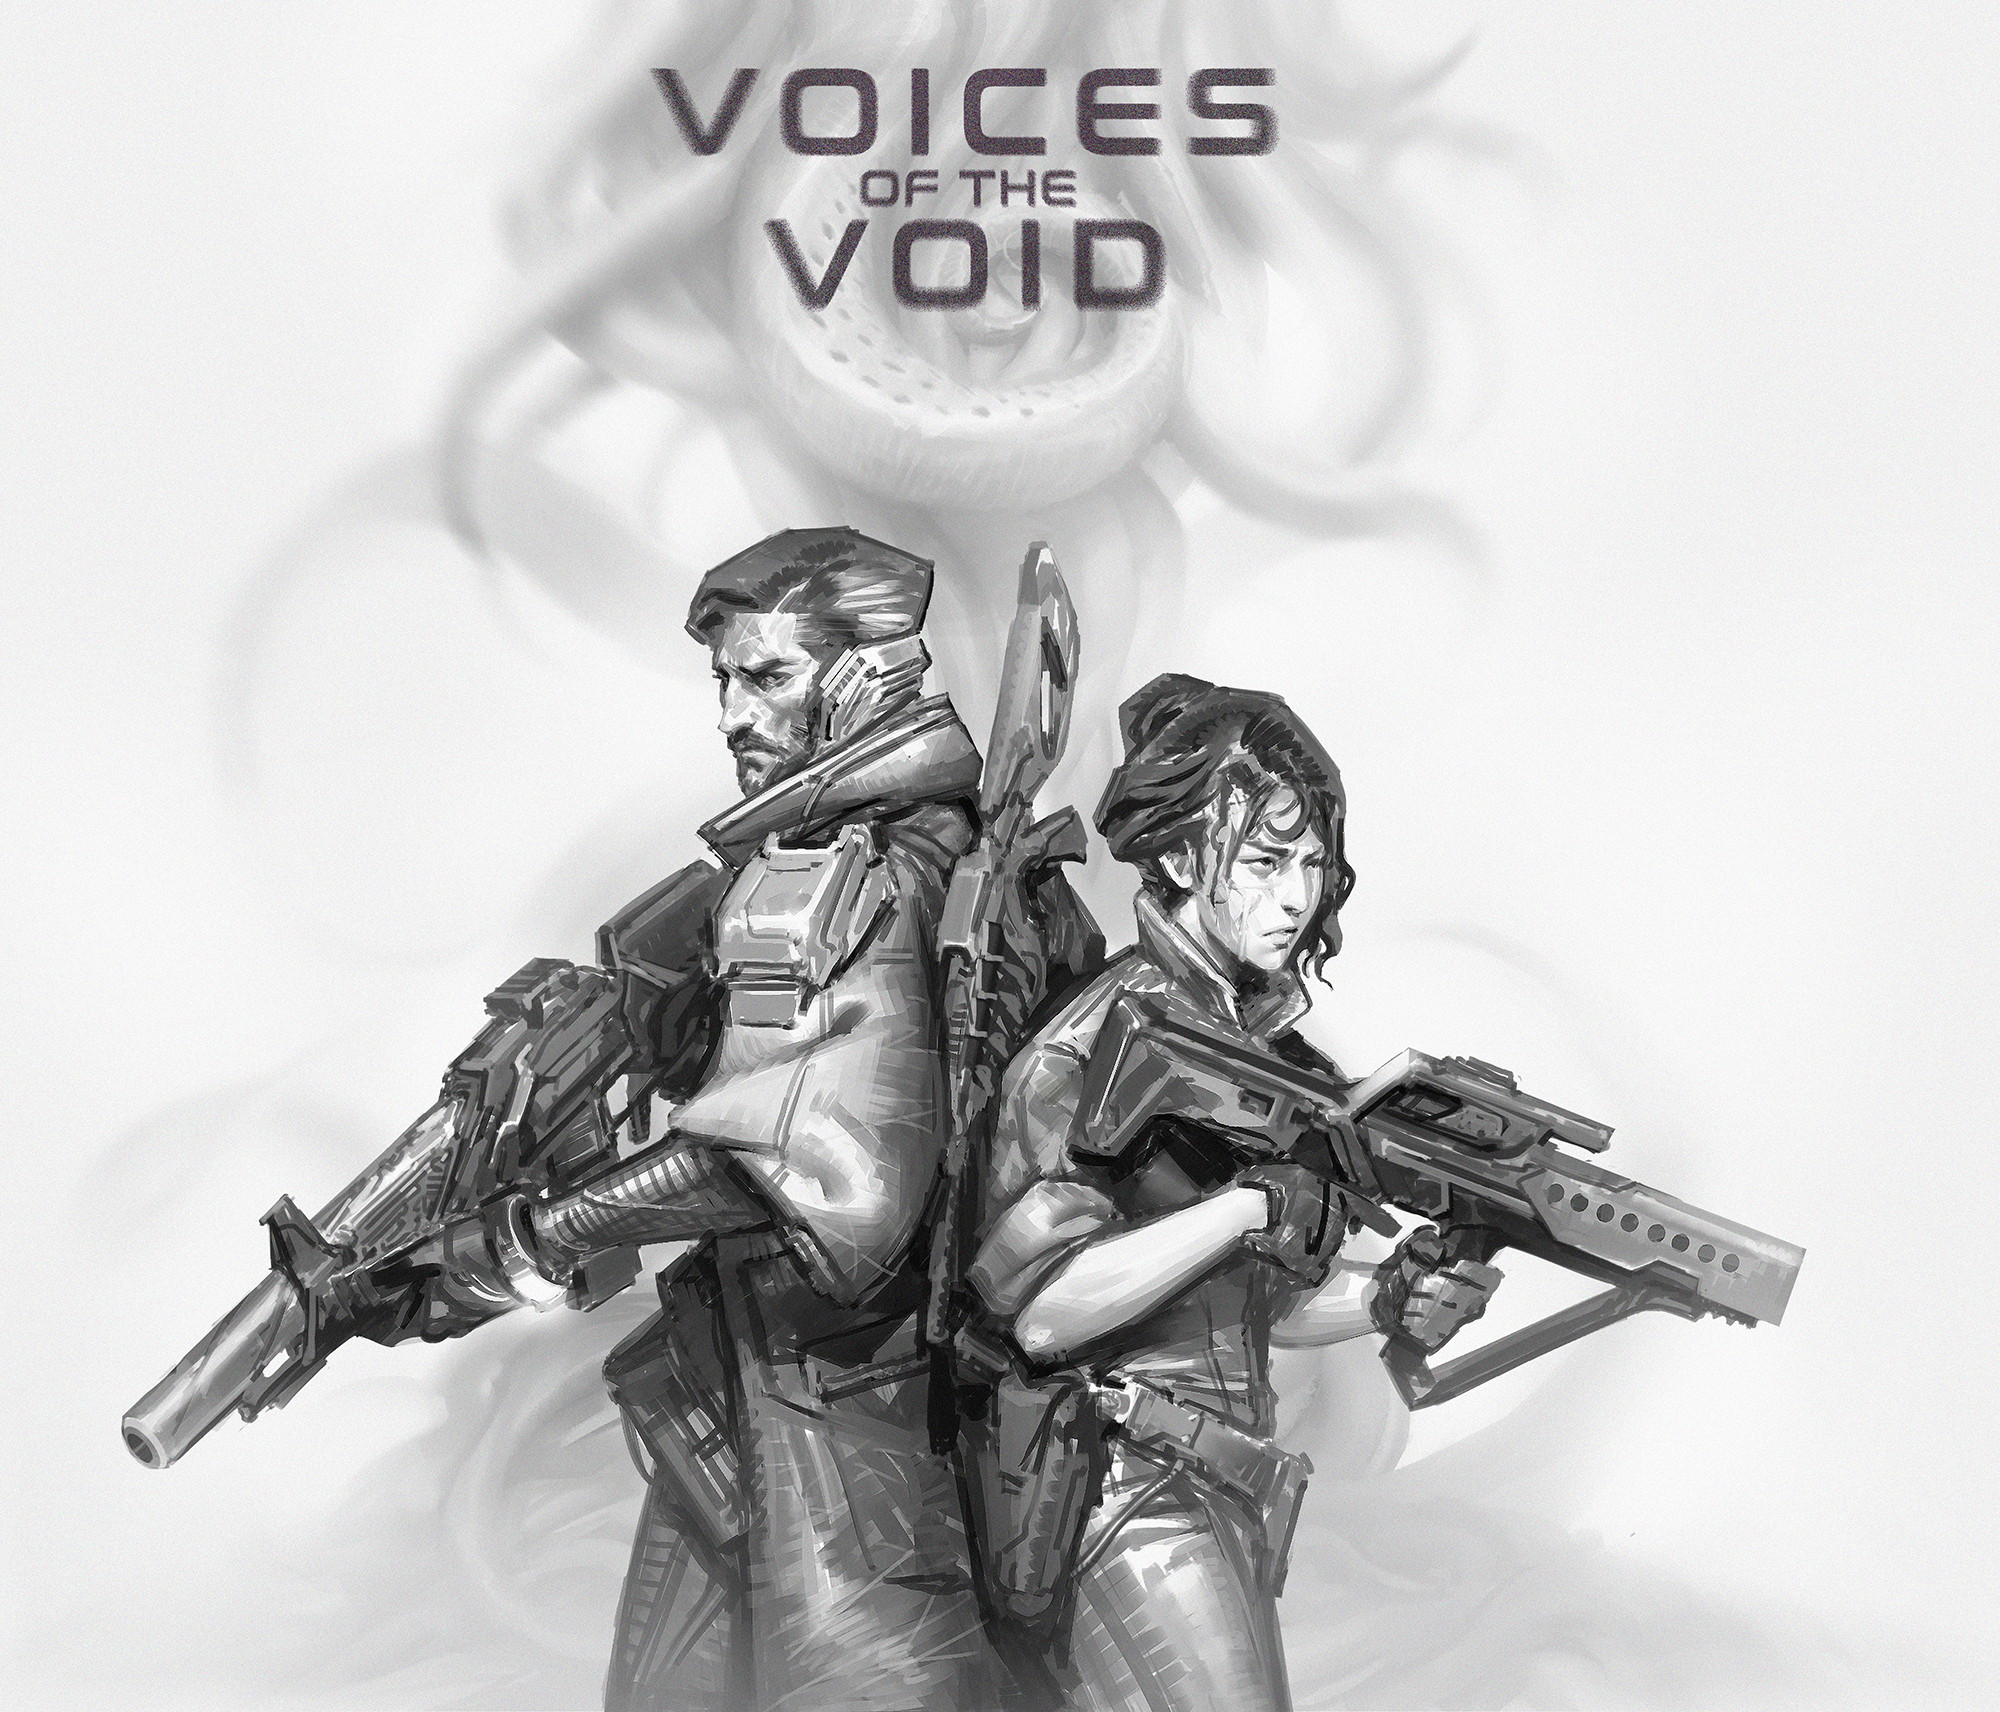 Voices of the void настройки